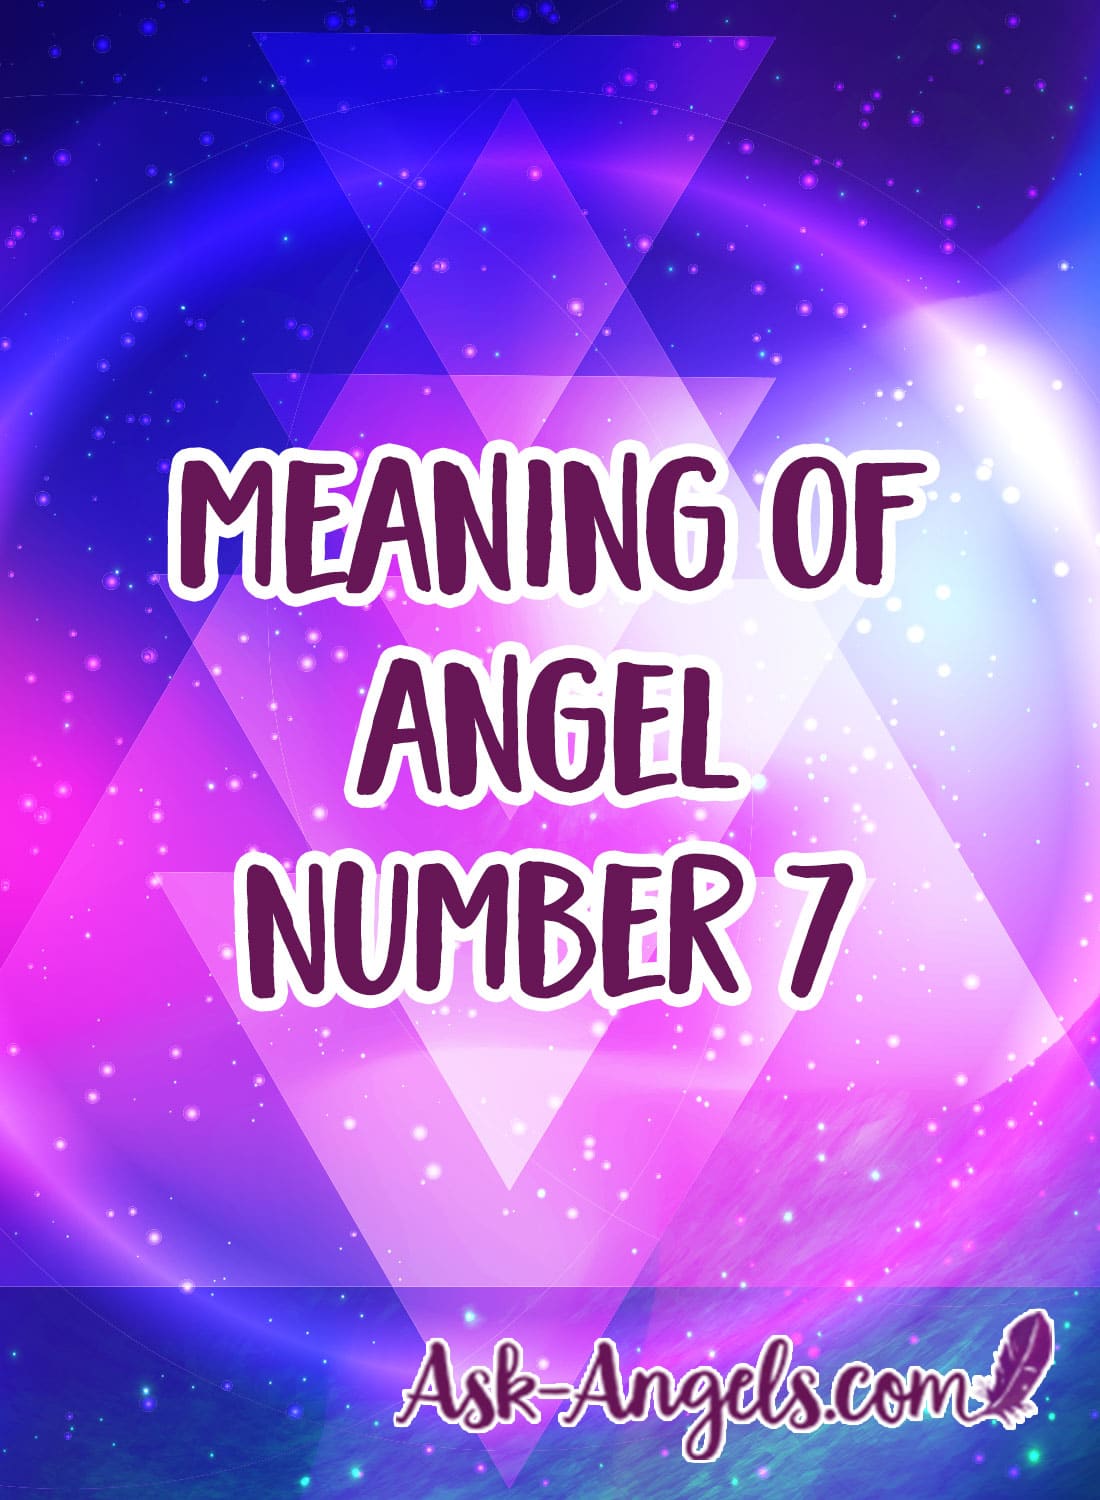 천사 번호 7 의 의미